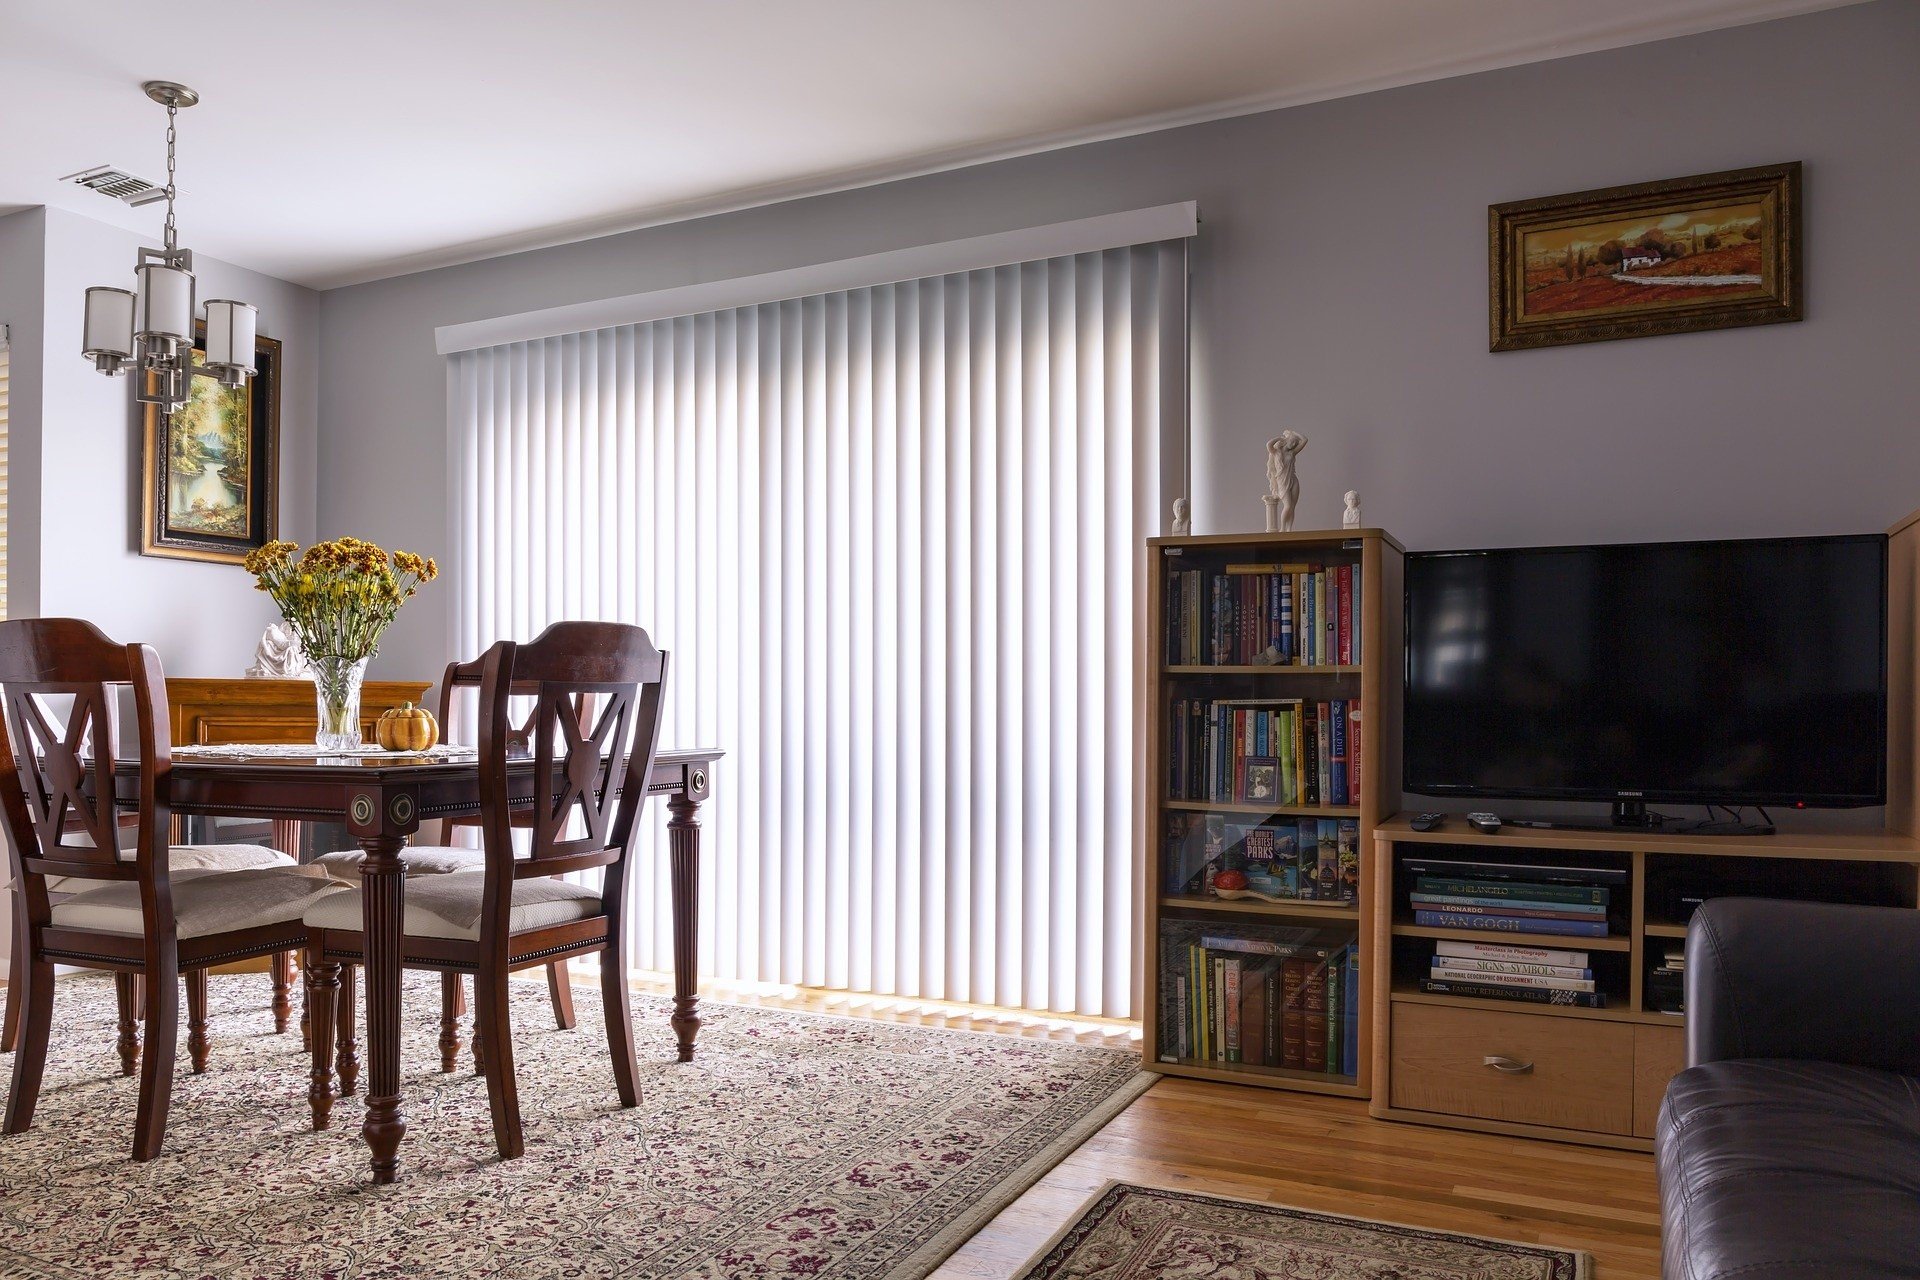 Jaka dekoracja okien jest najlepsza? Firany, zasłony czy rolety? | RegioDom